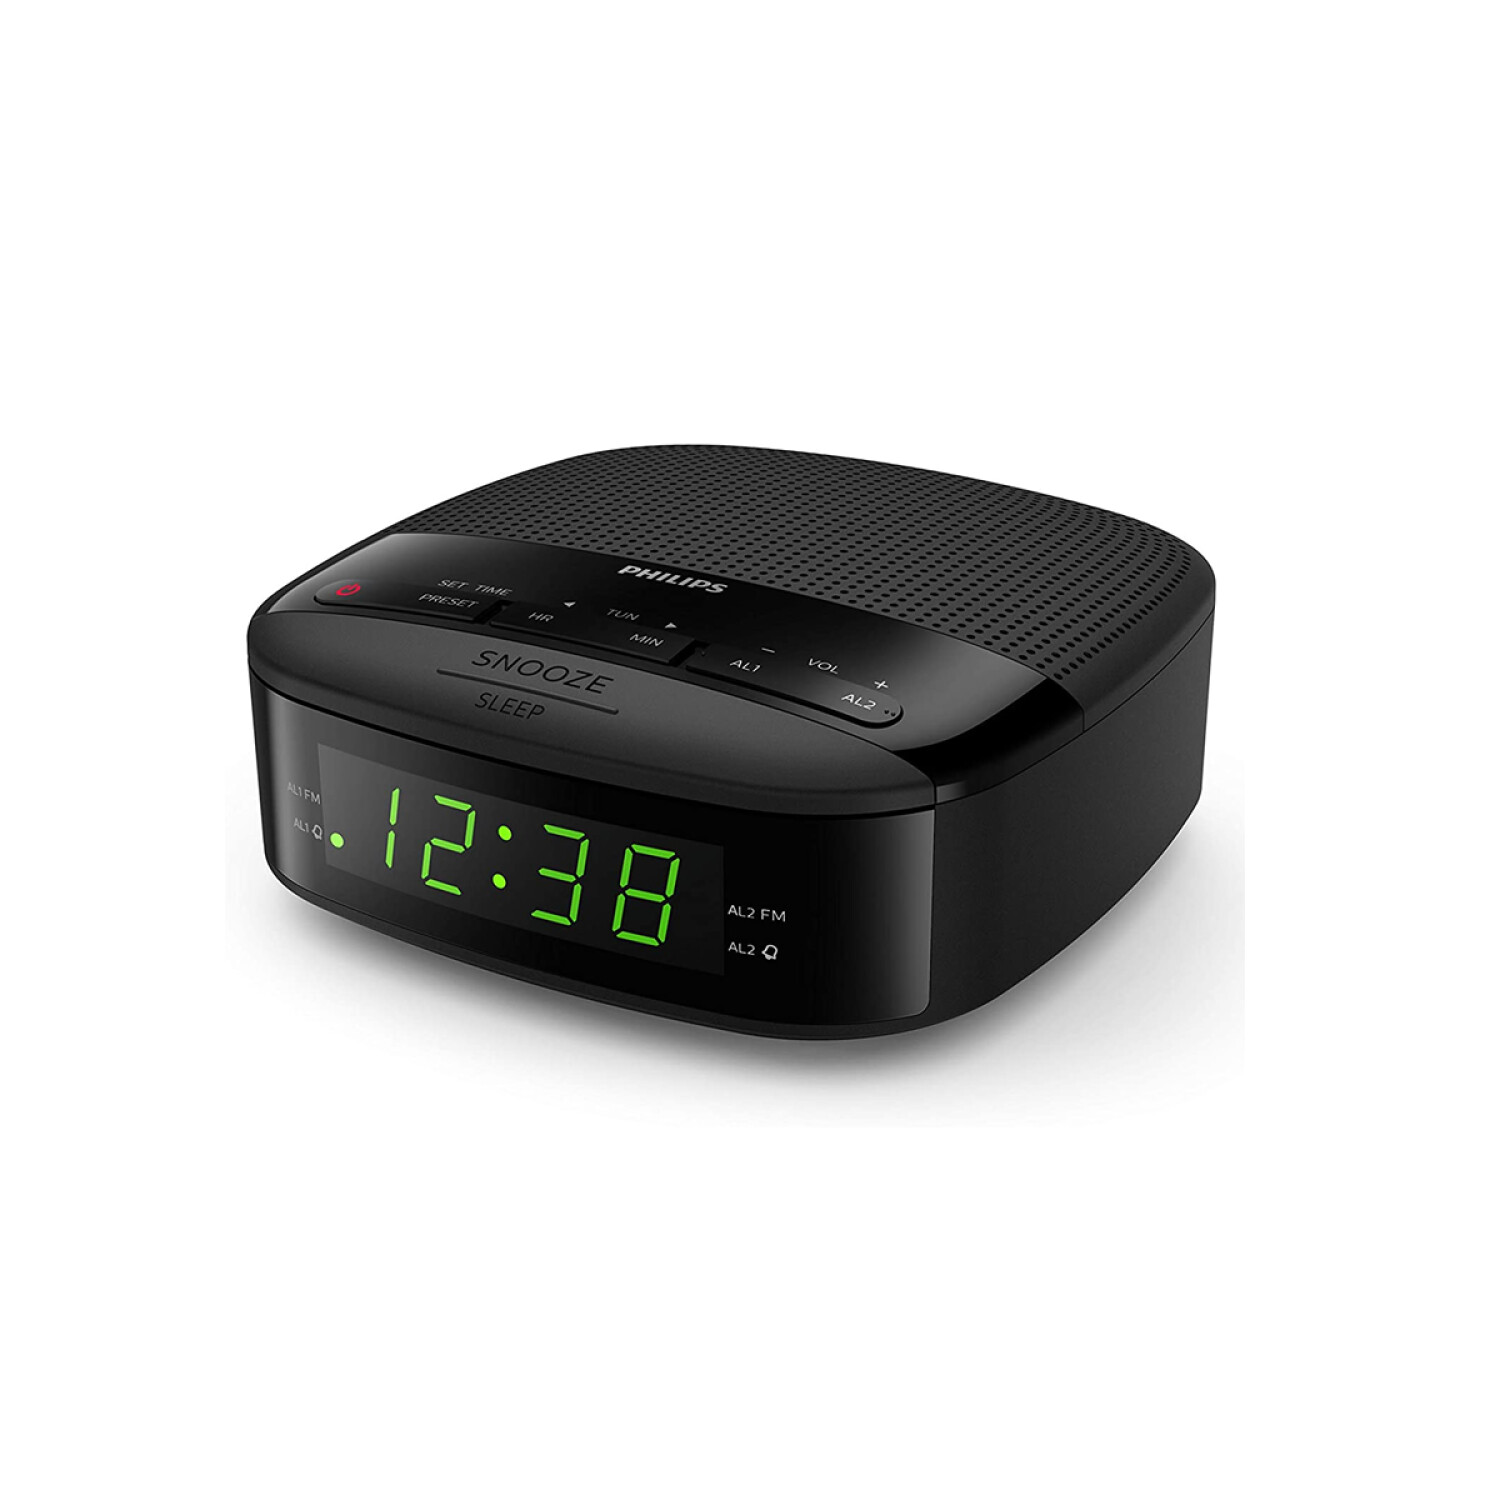 Radio Reloj Despertador Philips Doble Alarma Y Temporizador — Game Stop